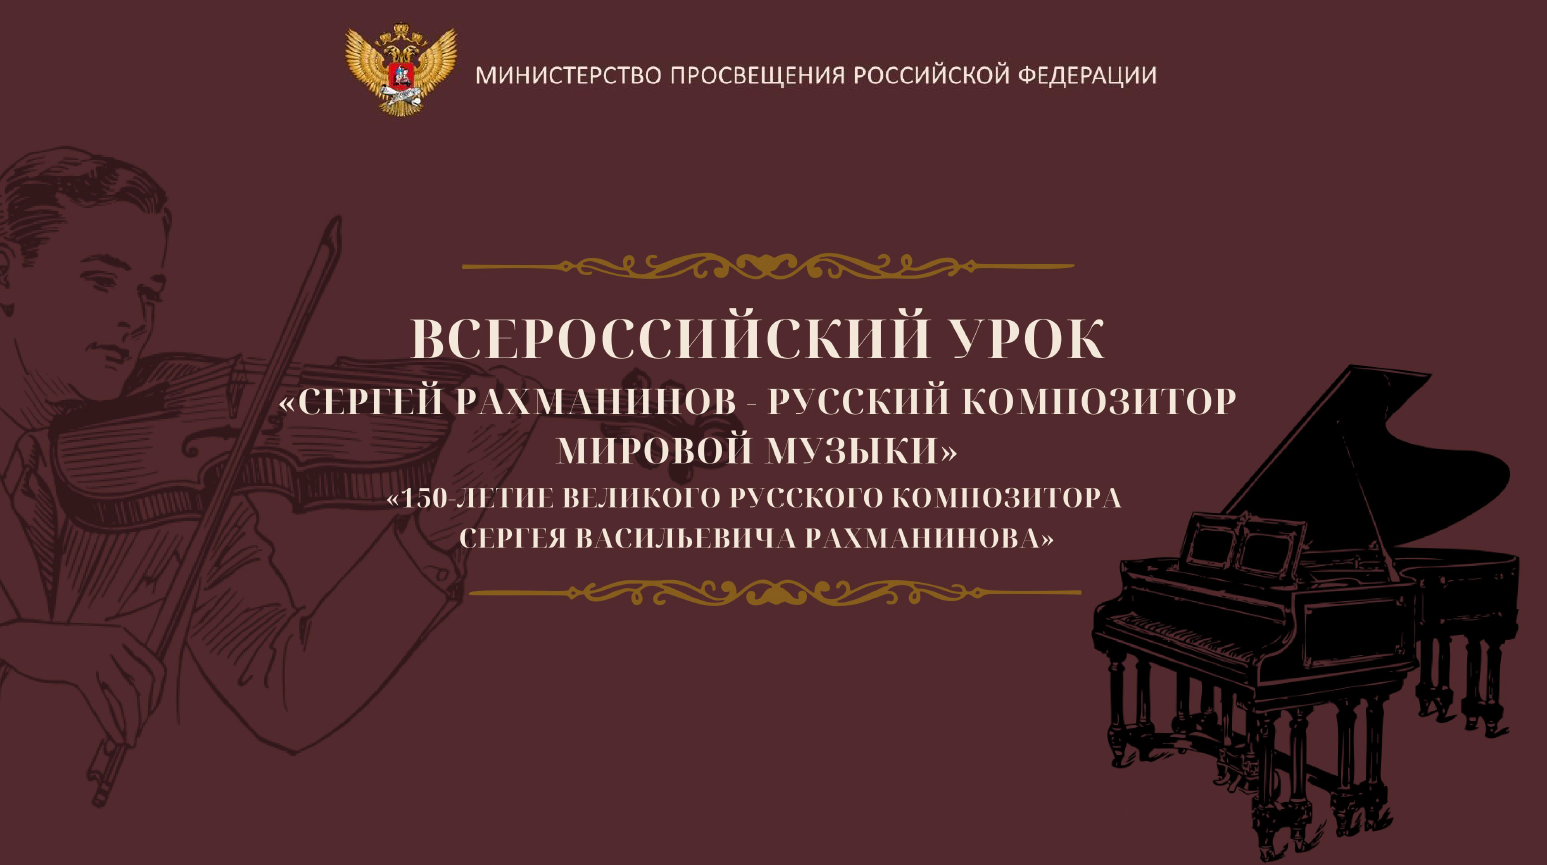 Всероссийского урока музыки, посвященного 150-летию С.В. Рахманинова.